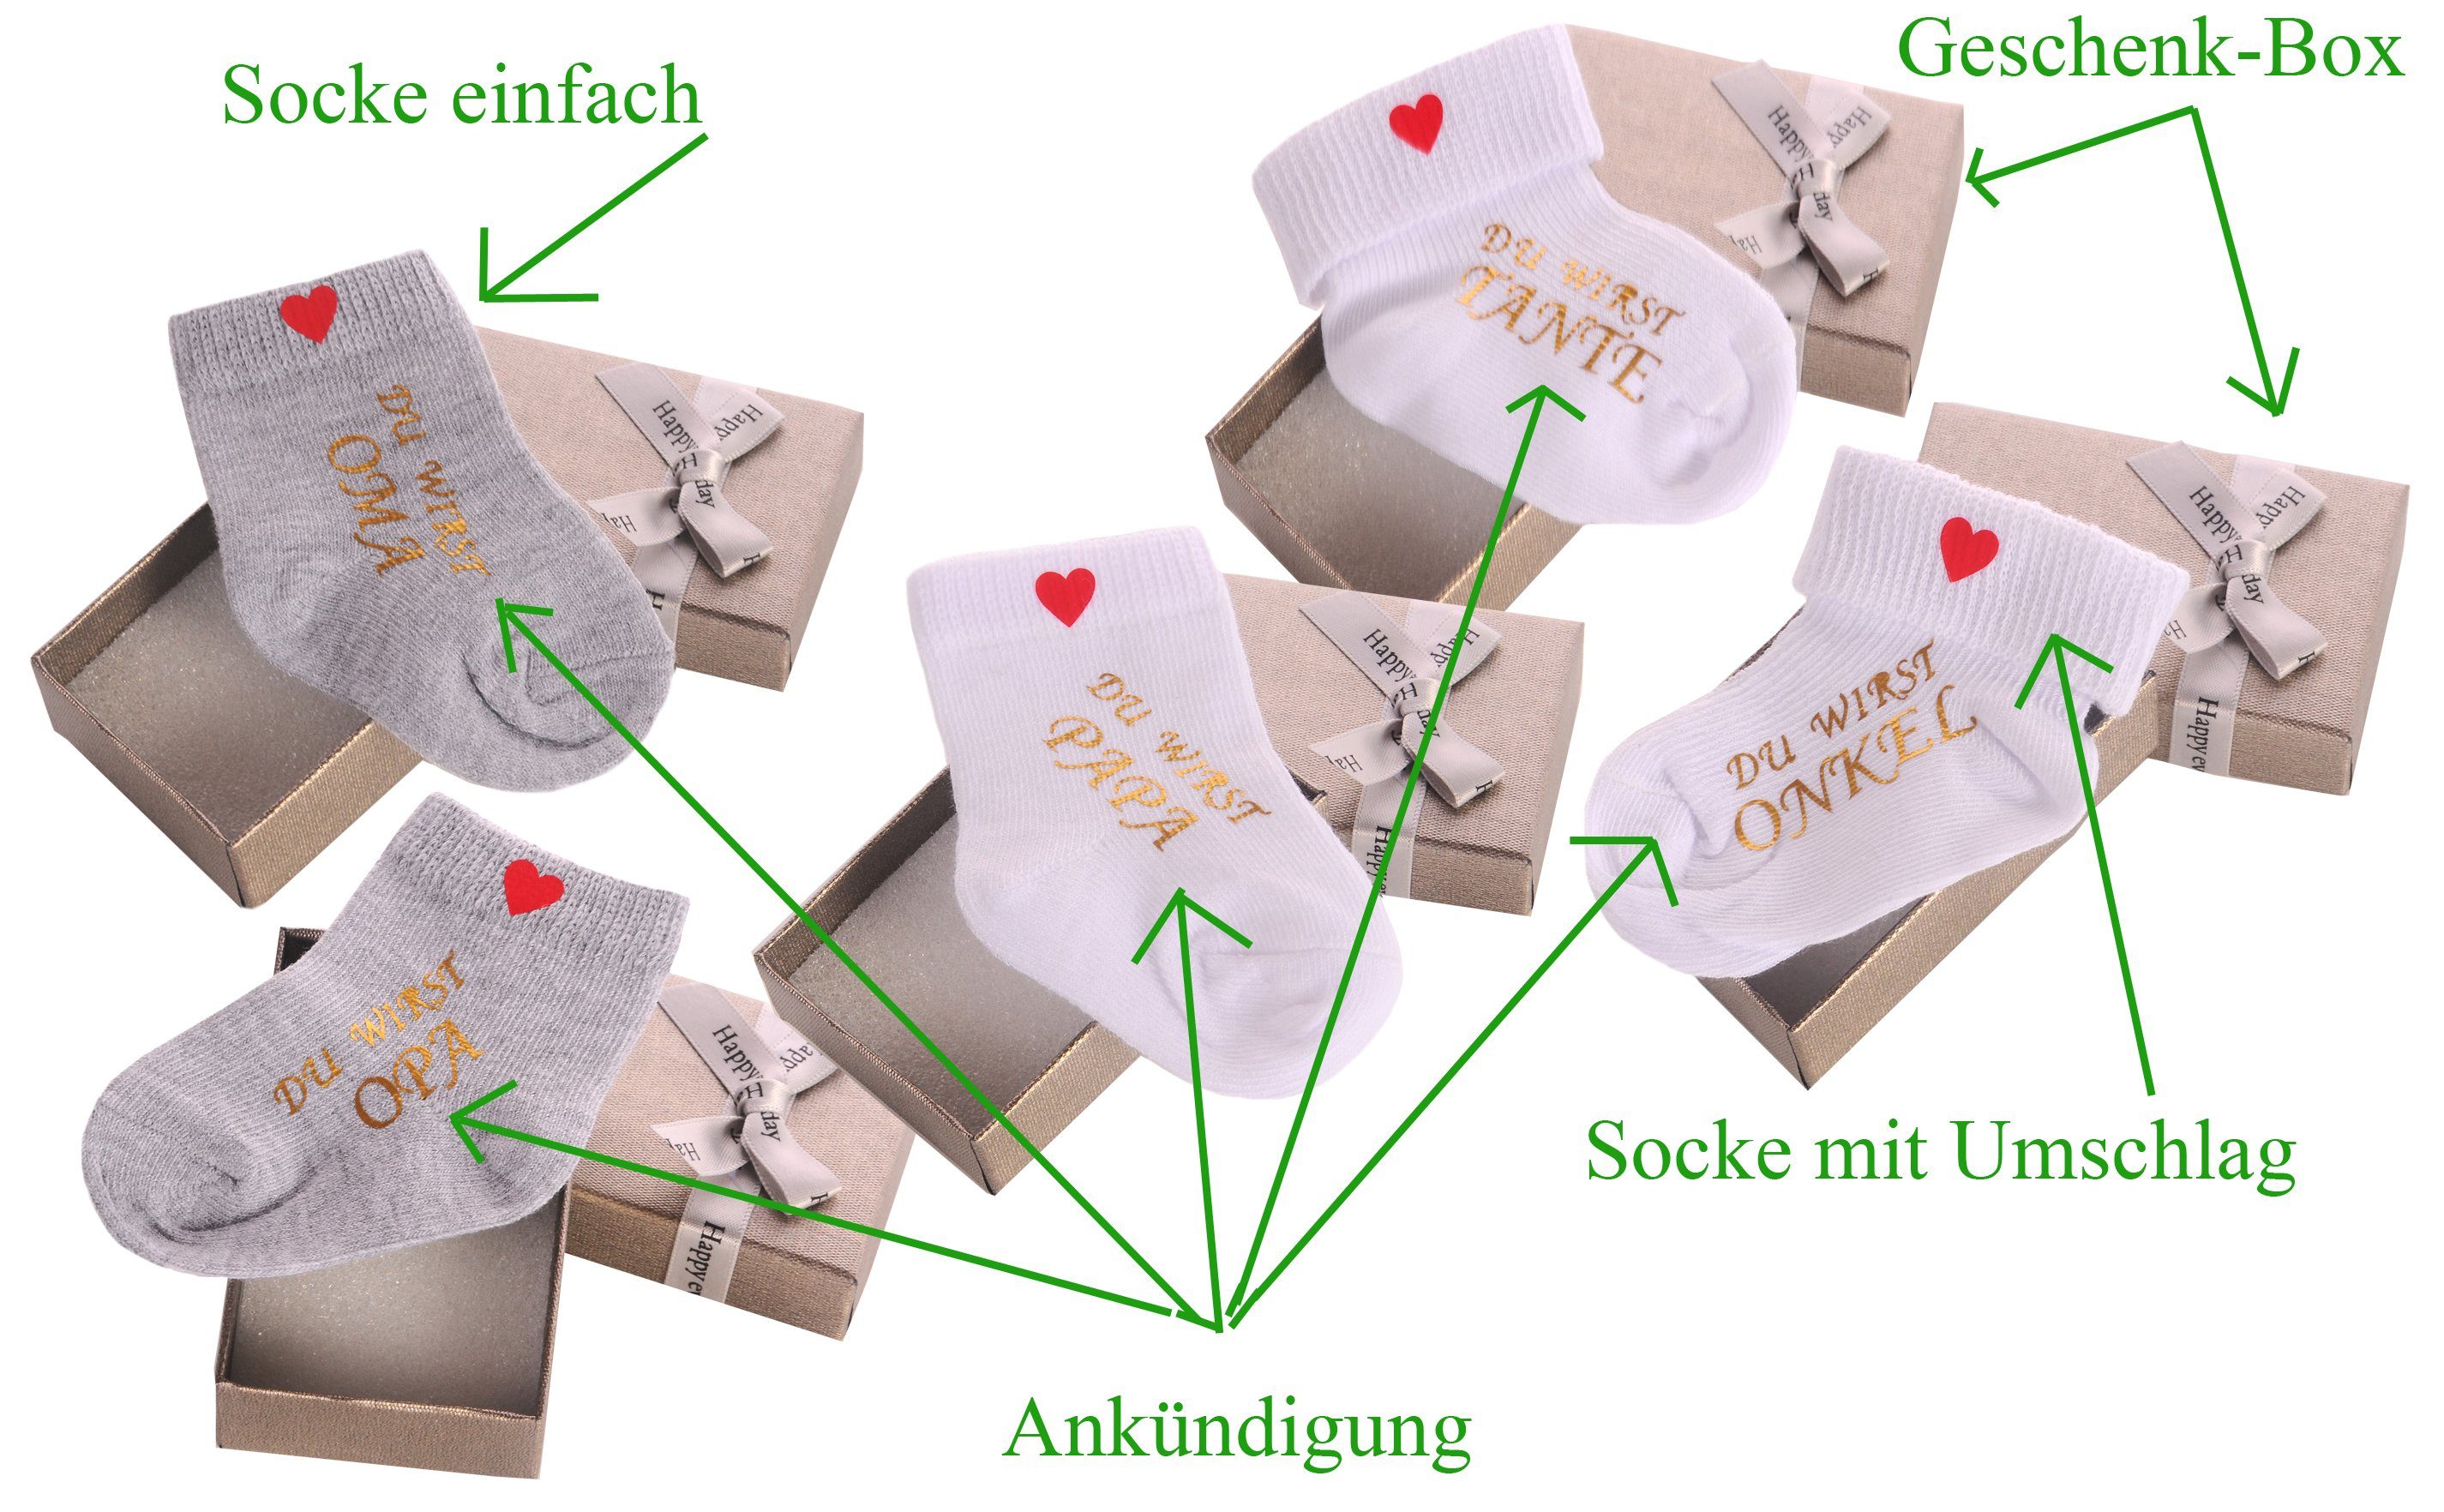 La Oma Ankündigung Große und Bortini Socke Geschenkidee / Papa Opa Geschenkbox (Socke einfach) Schwester Neugeborenen-Geschenkset mit Weiß